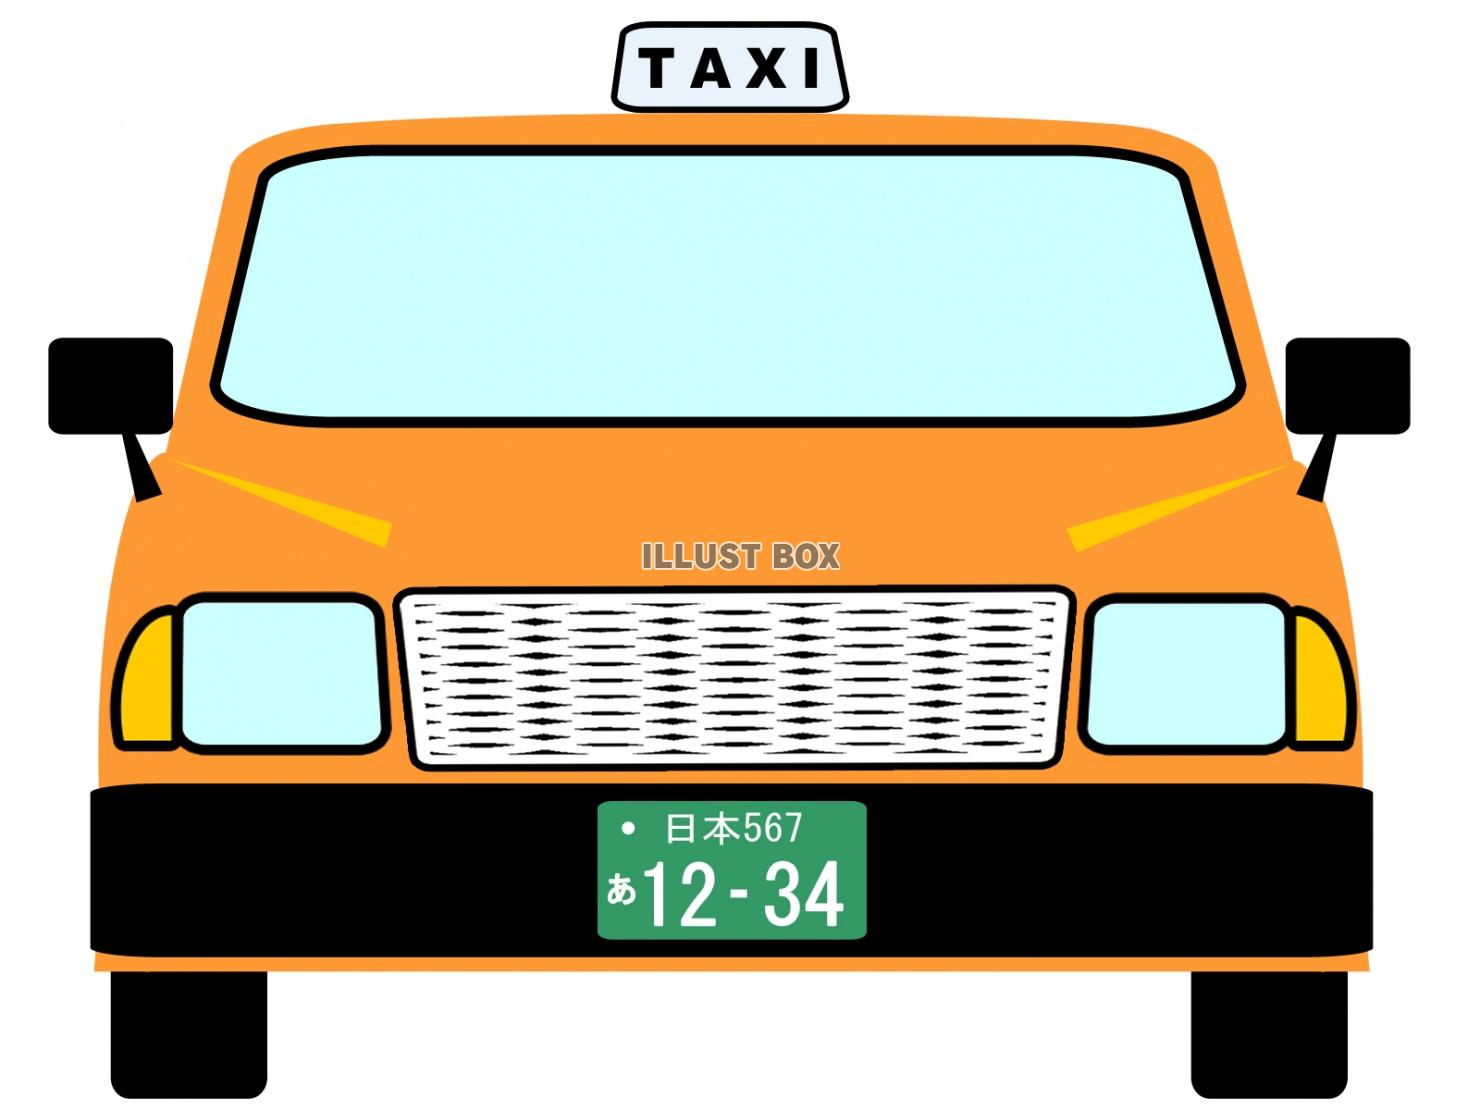 タクシー壁紙画像シンプル背景素材イラスト